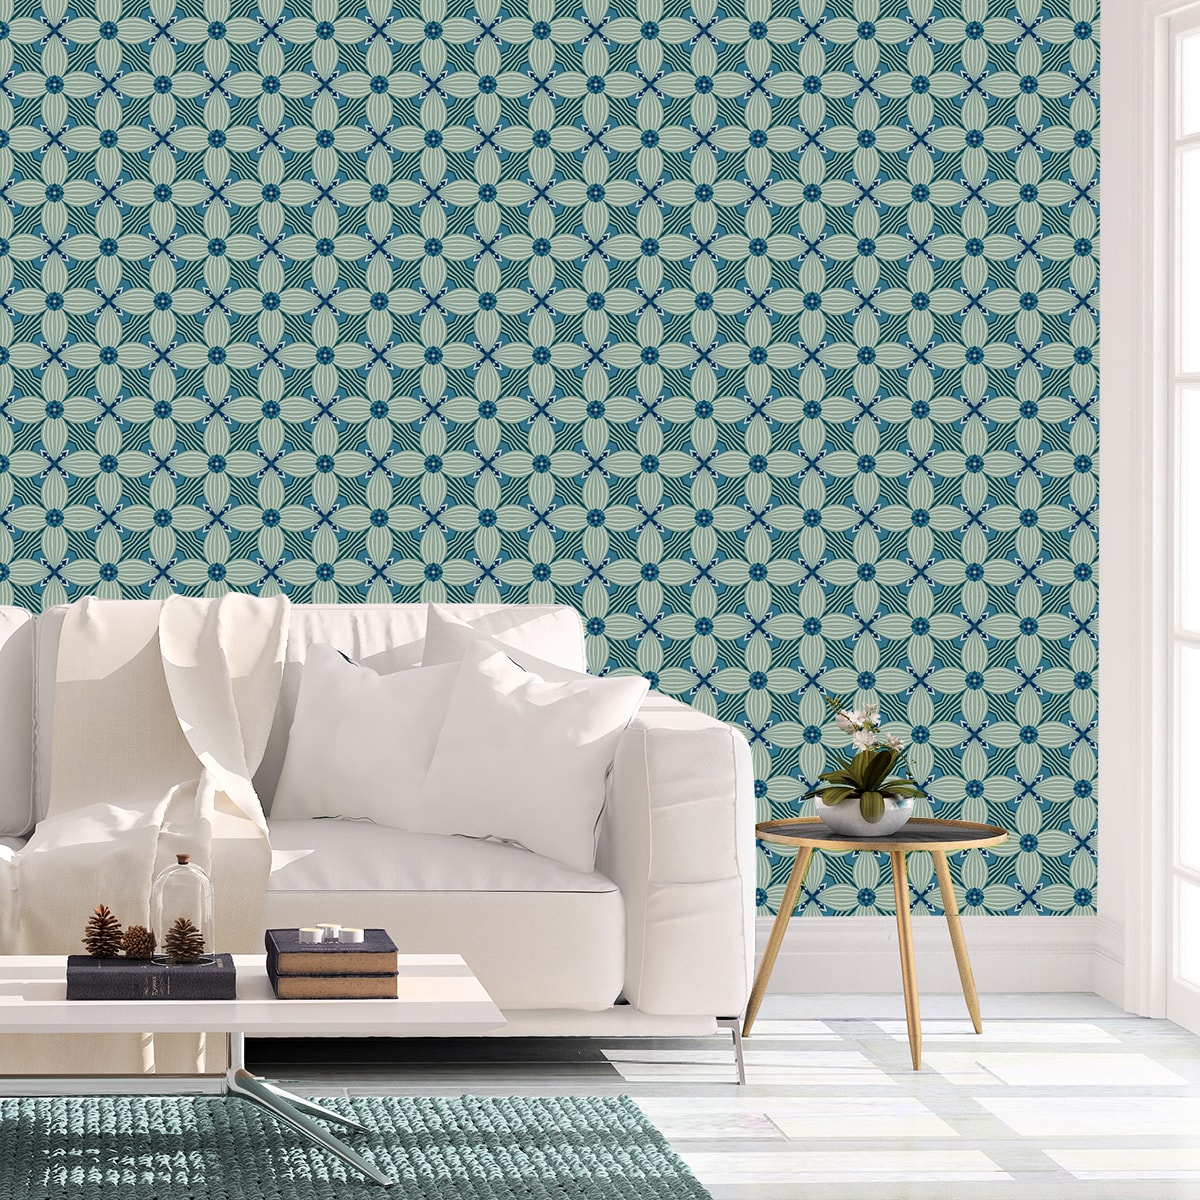 Schlafzimmer tapezieren in grün blau: Petrol Ornamenttapete Art Deko Lilly Muster groß - Design Tapete für Schlafzimmer